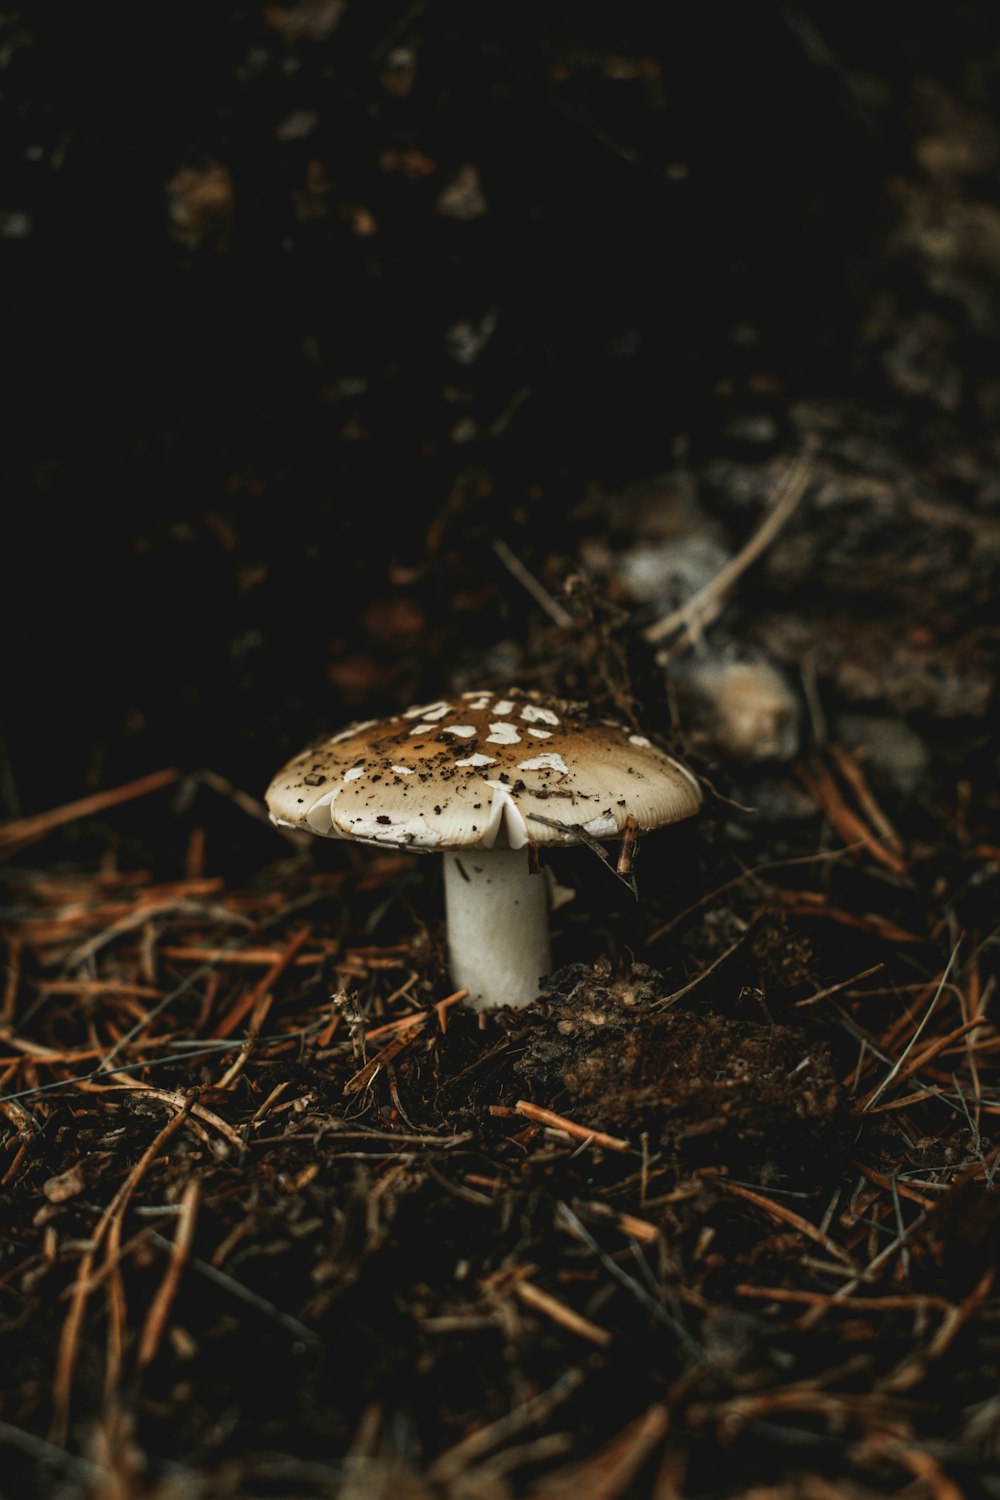 un petit champignon blanc posé sur le sol